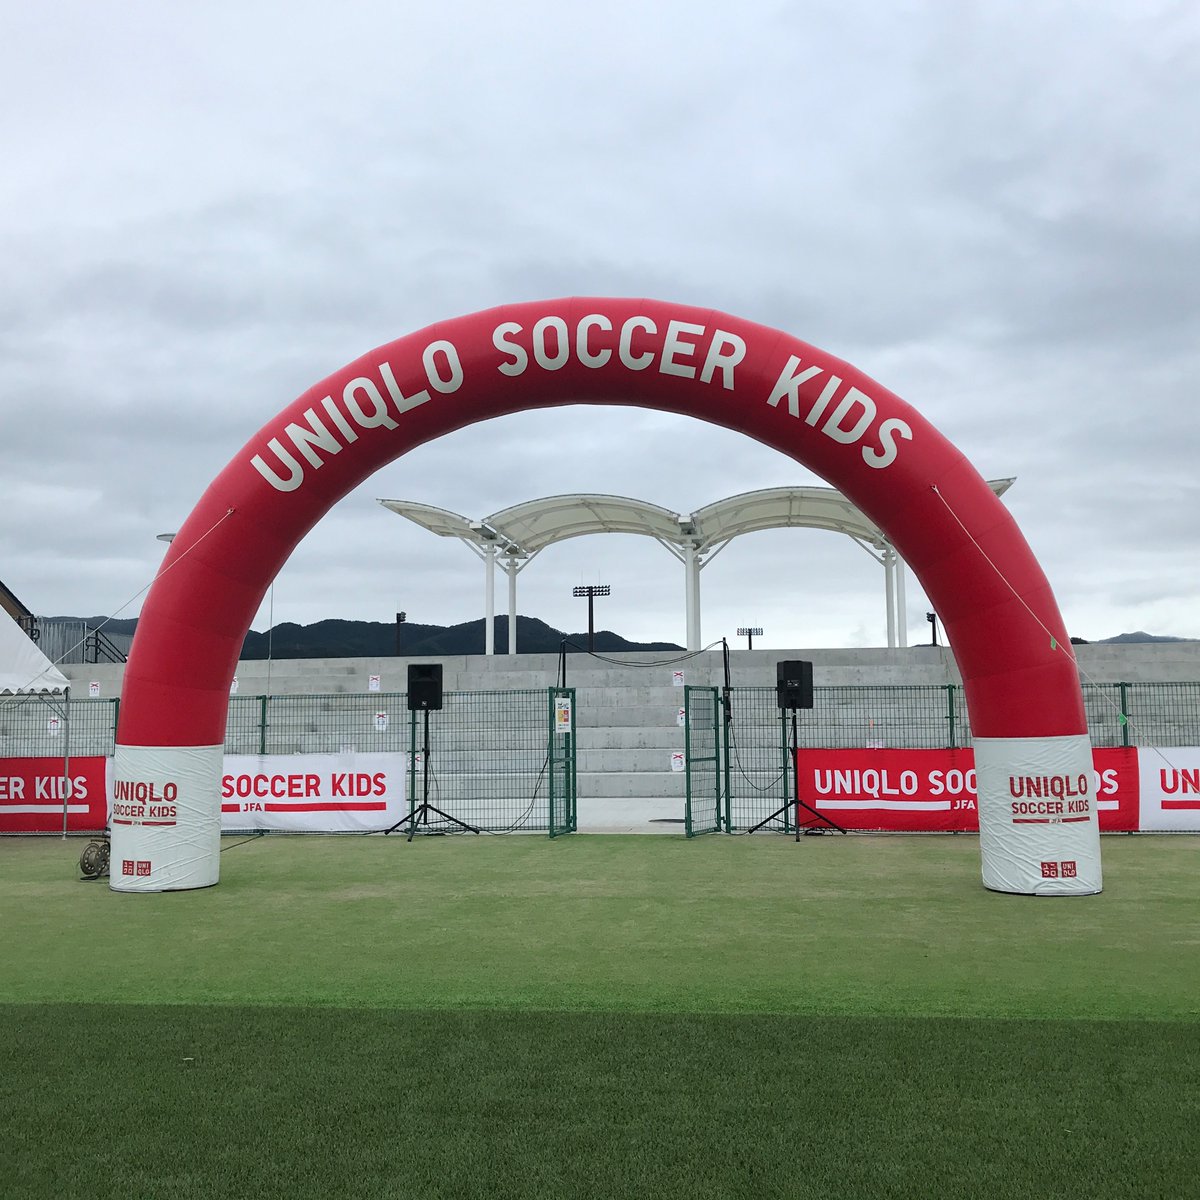 Uniqlo Soccer Kids Jfaユニクロサッカーキッズ In 岩手 今日は高田松原運動公園で開催します